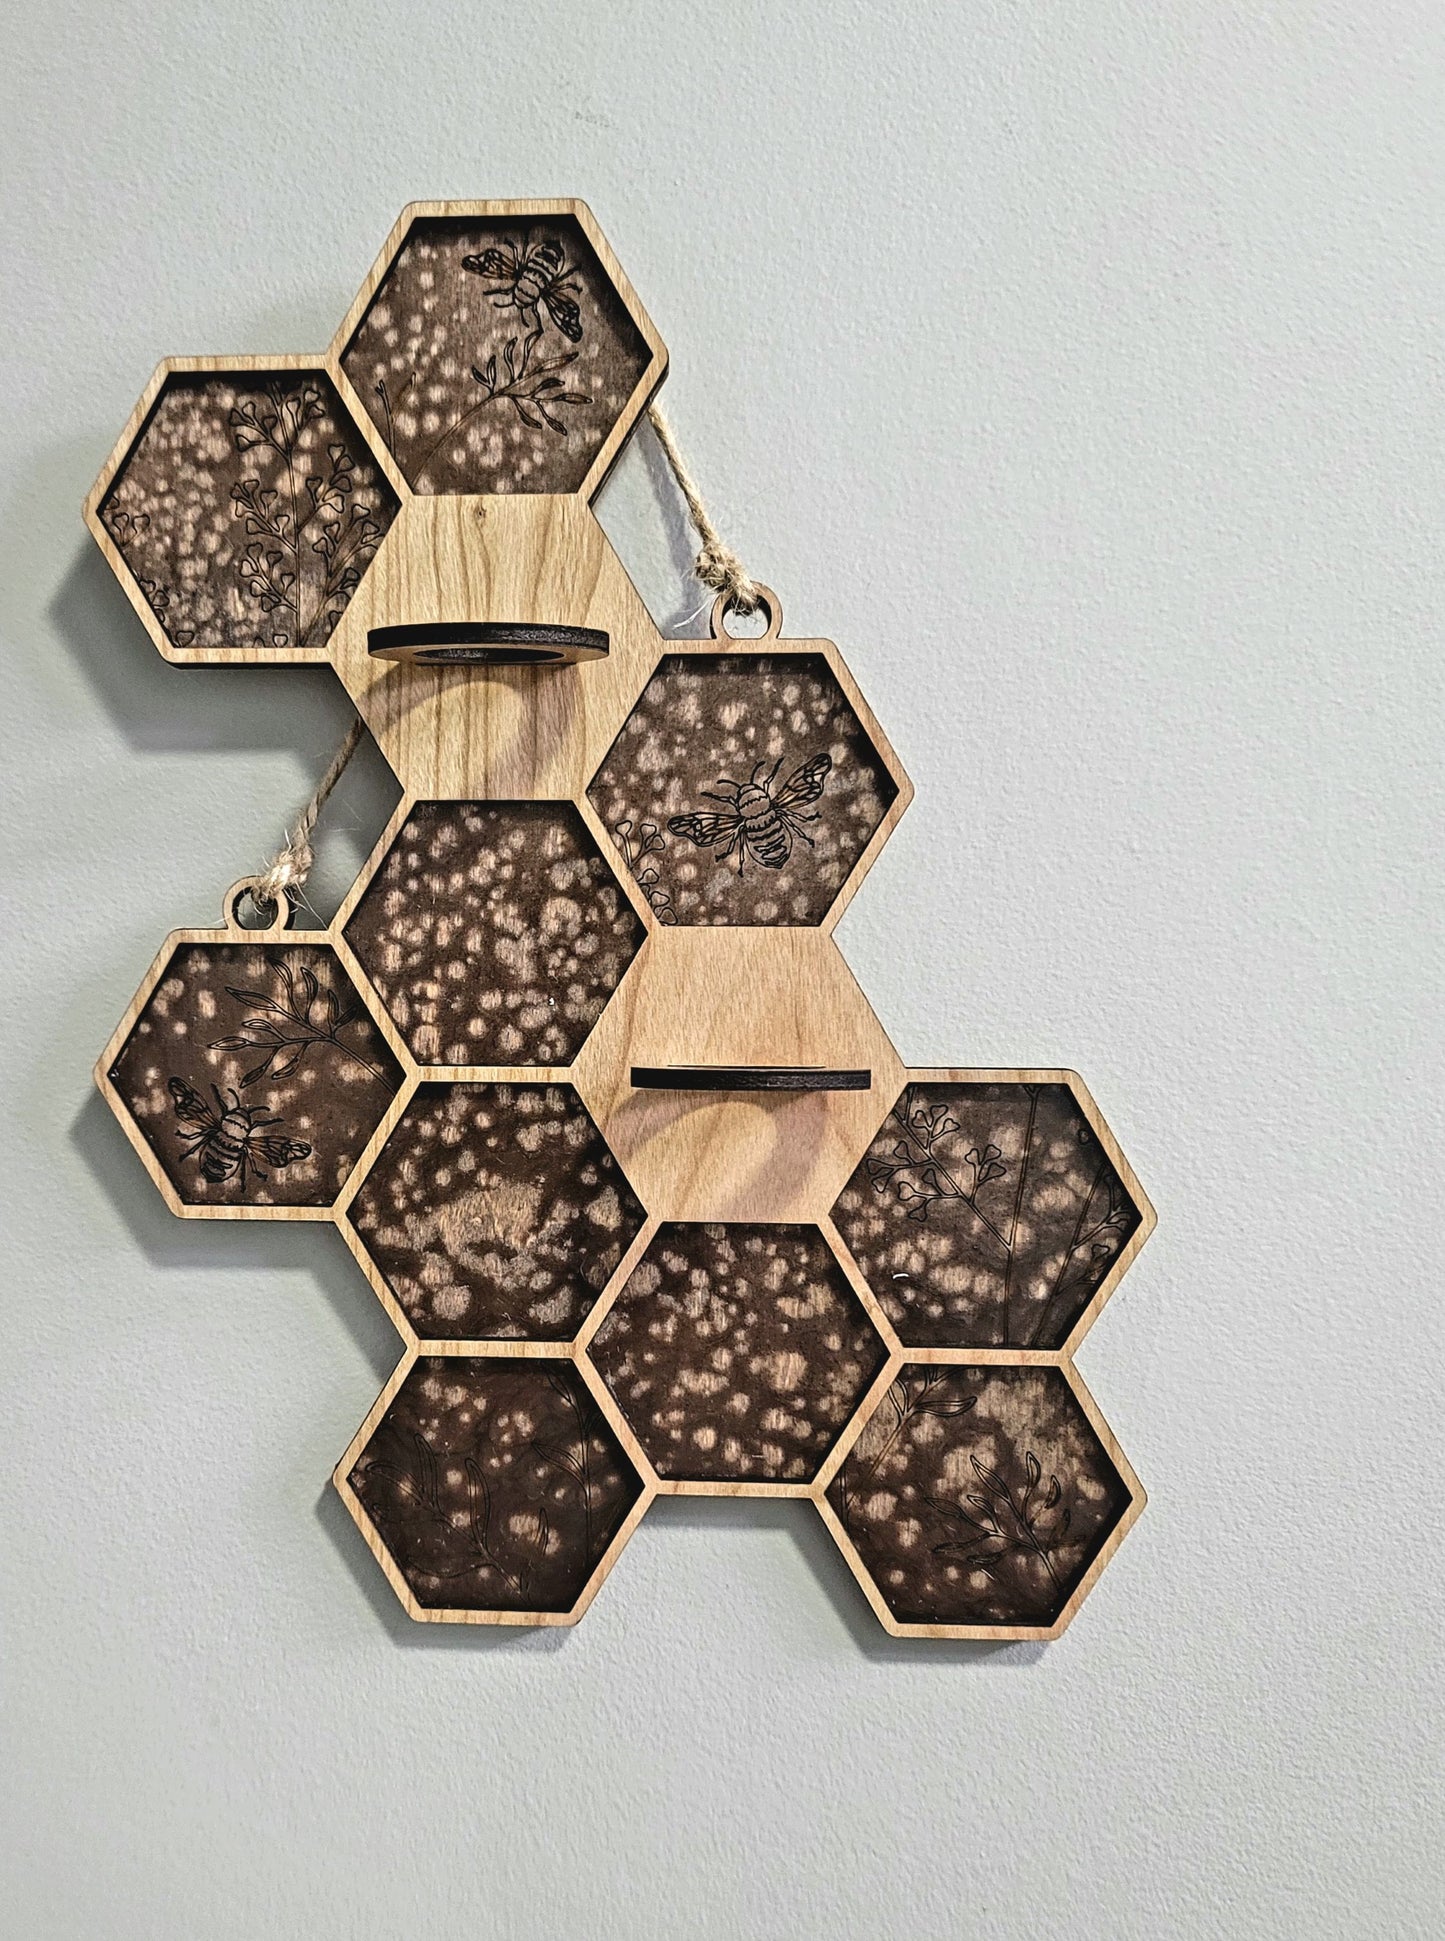 Honeycomb Propagation Station